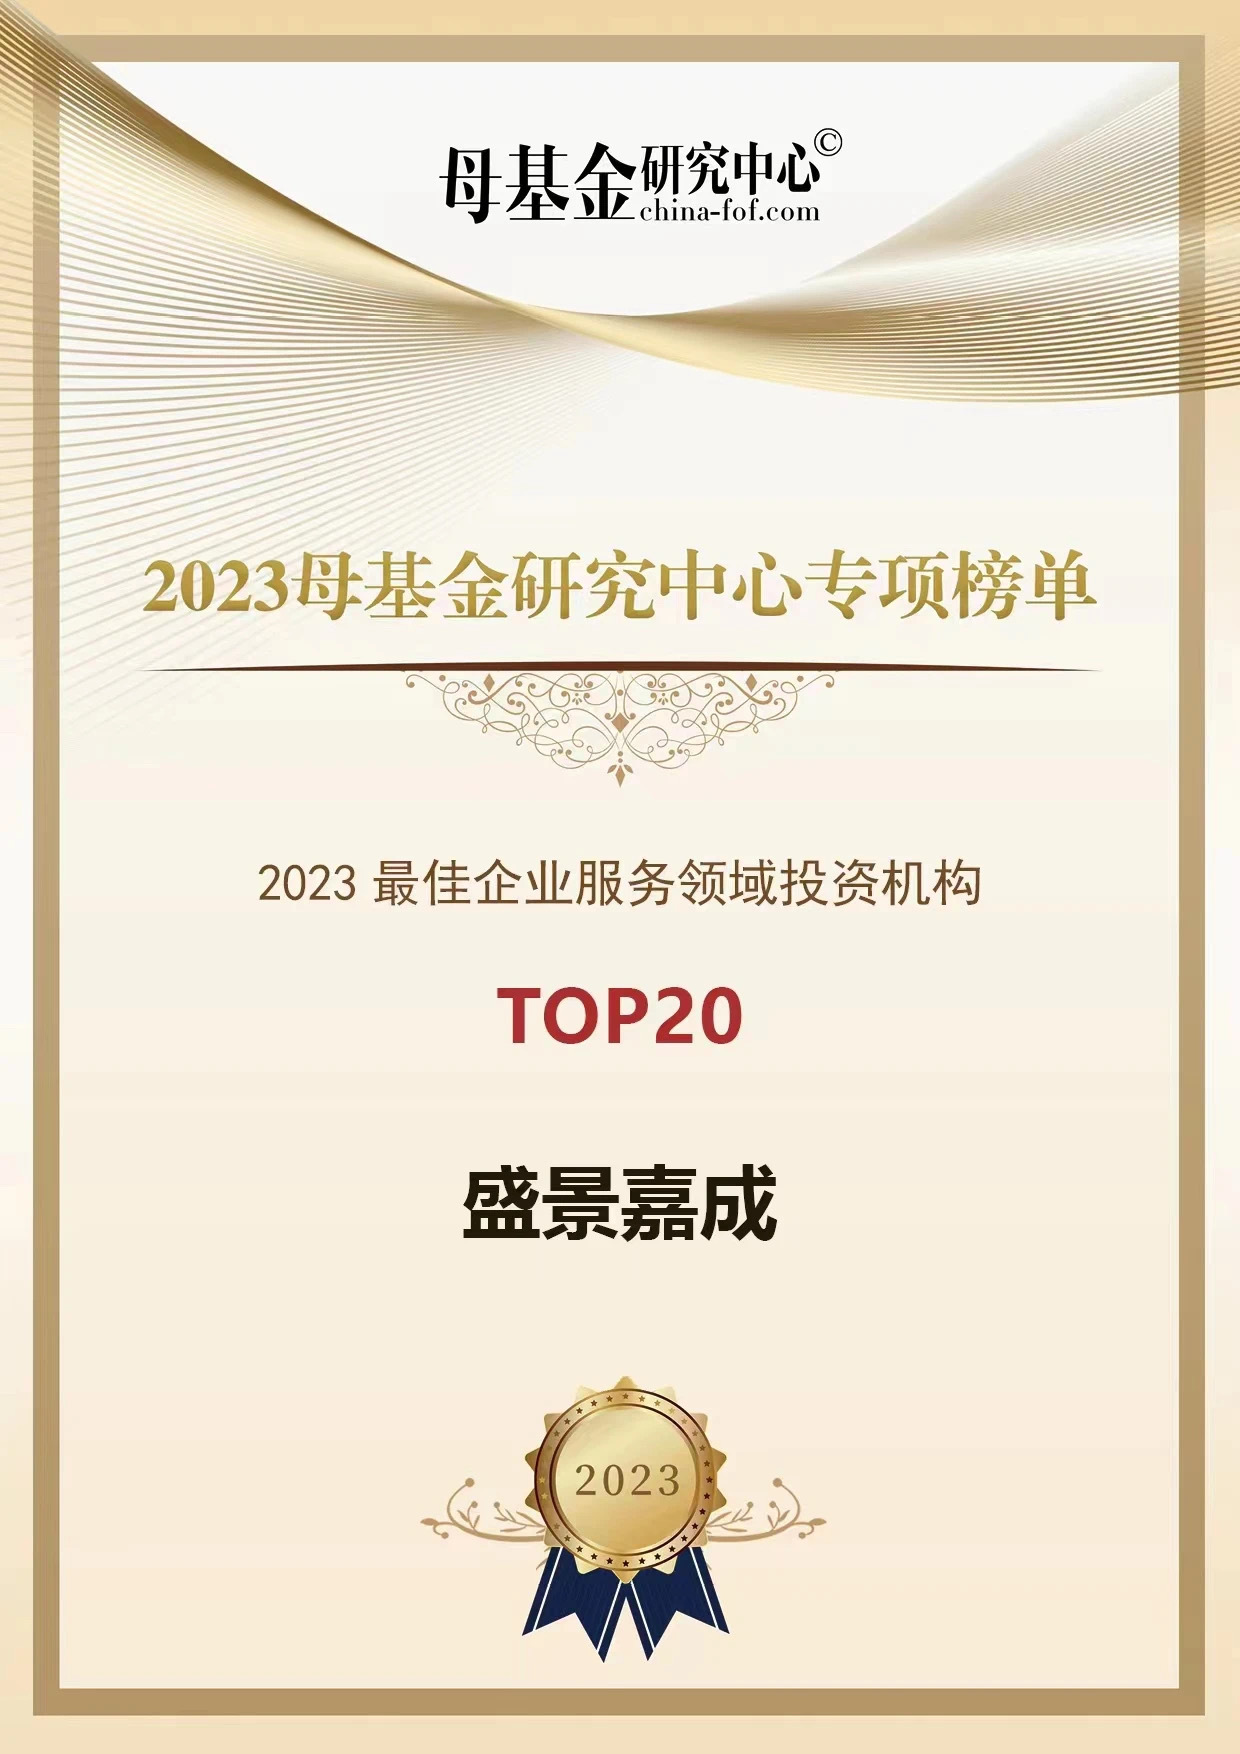 2023最佳企业服务领域投资机构TOP20